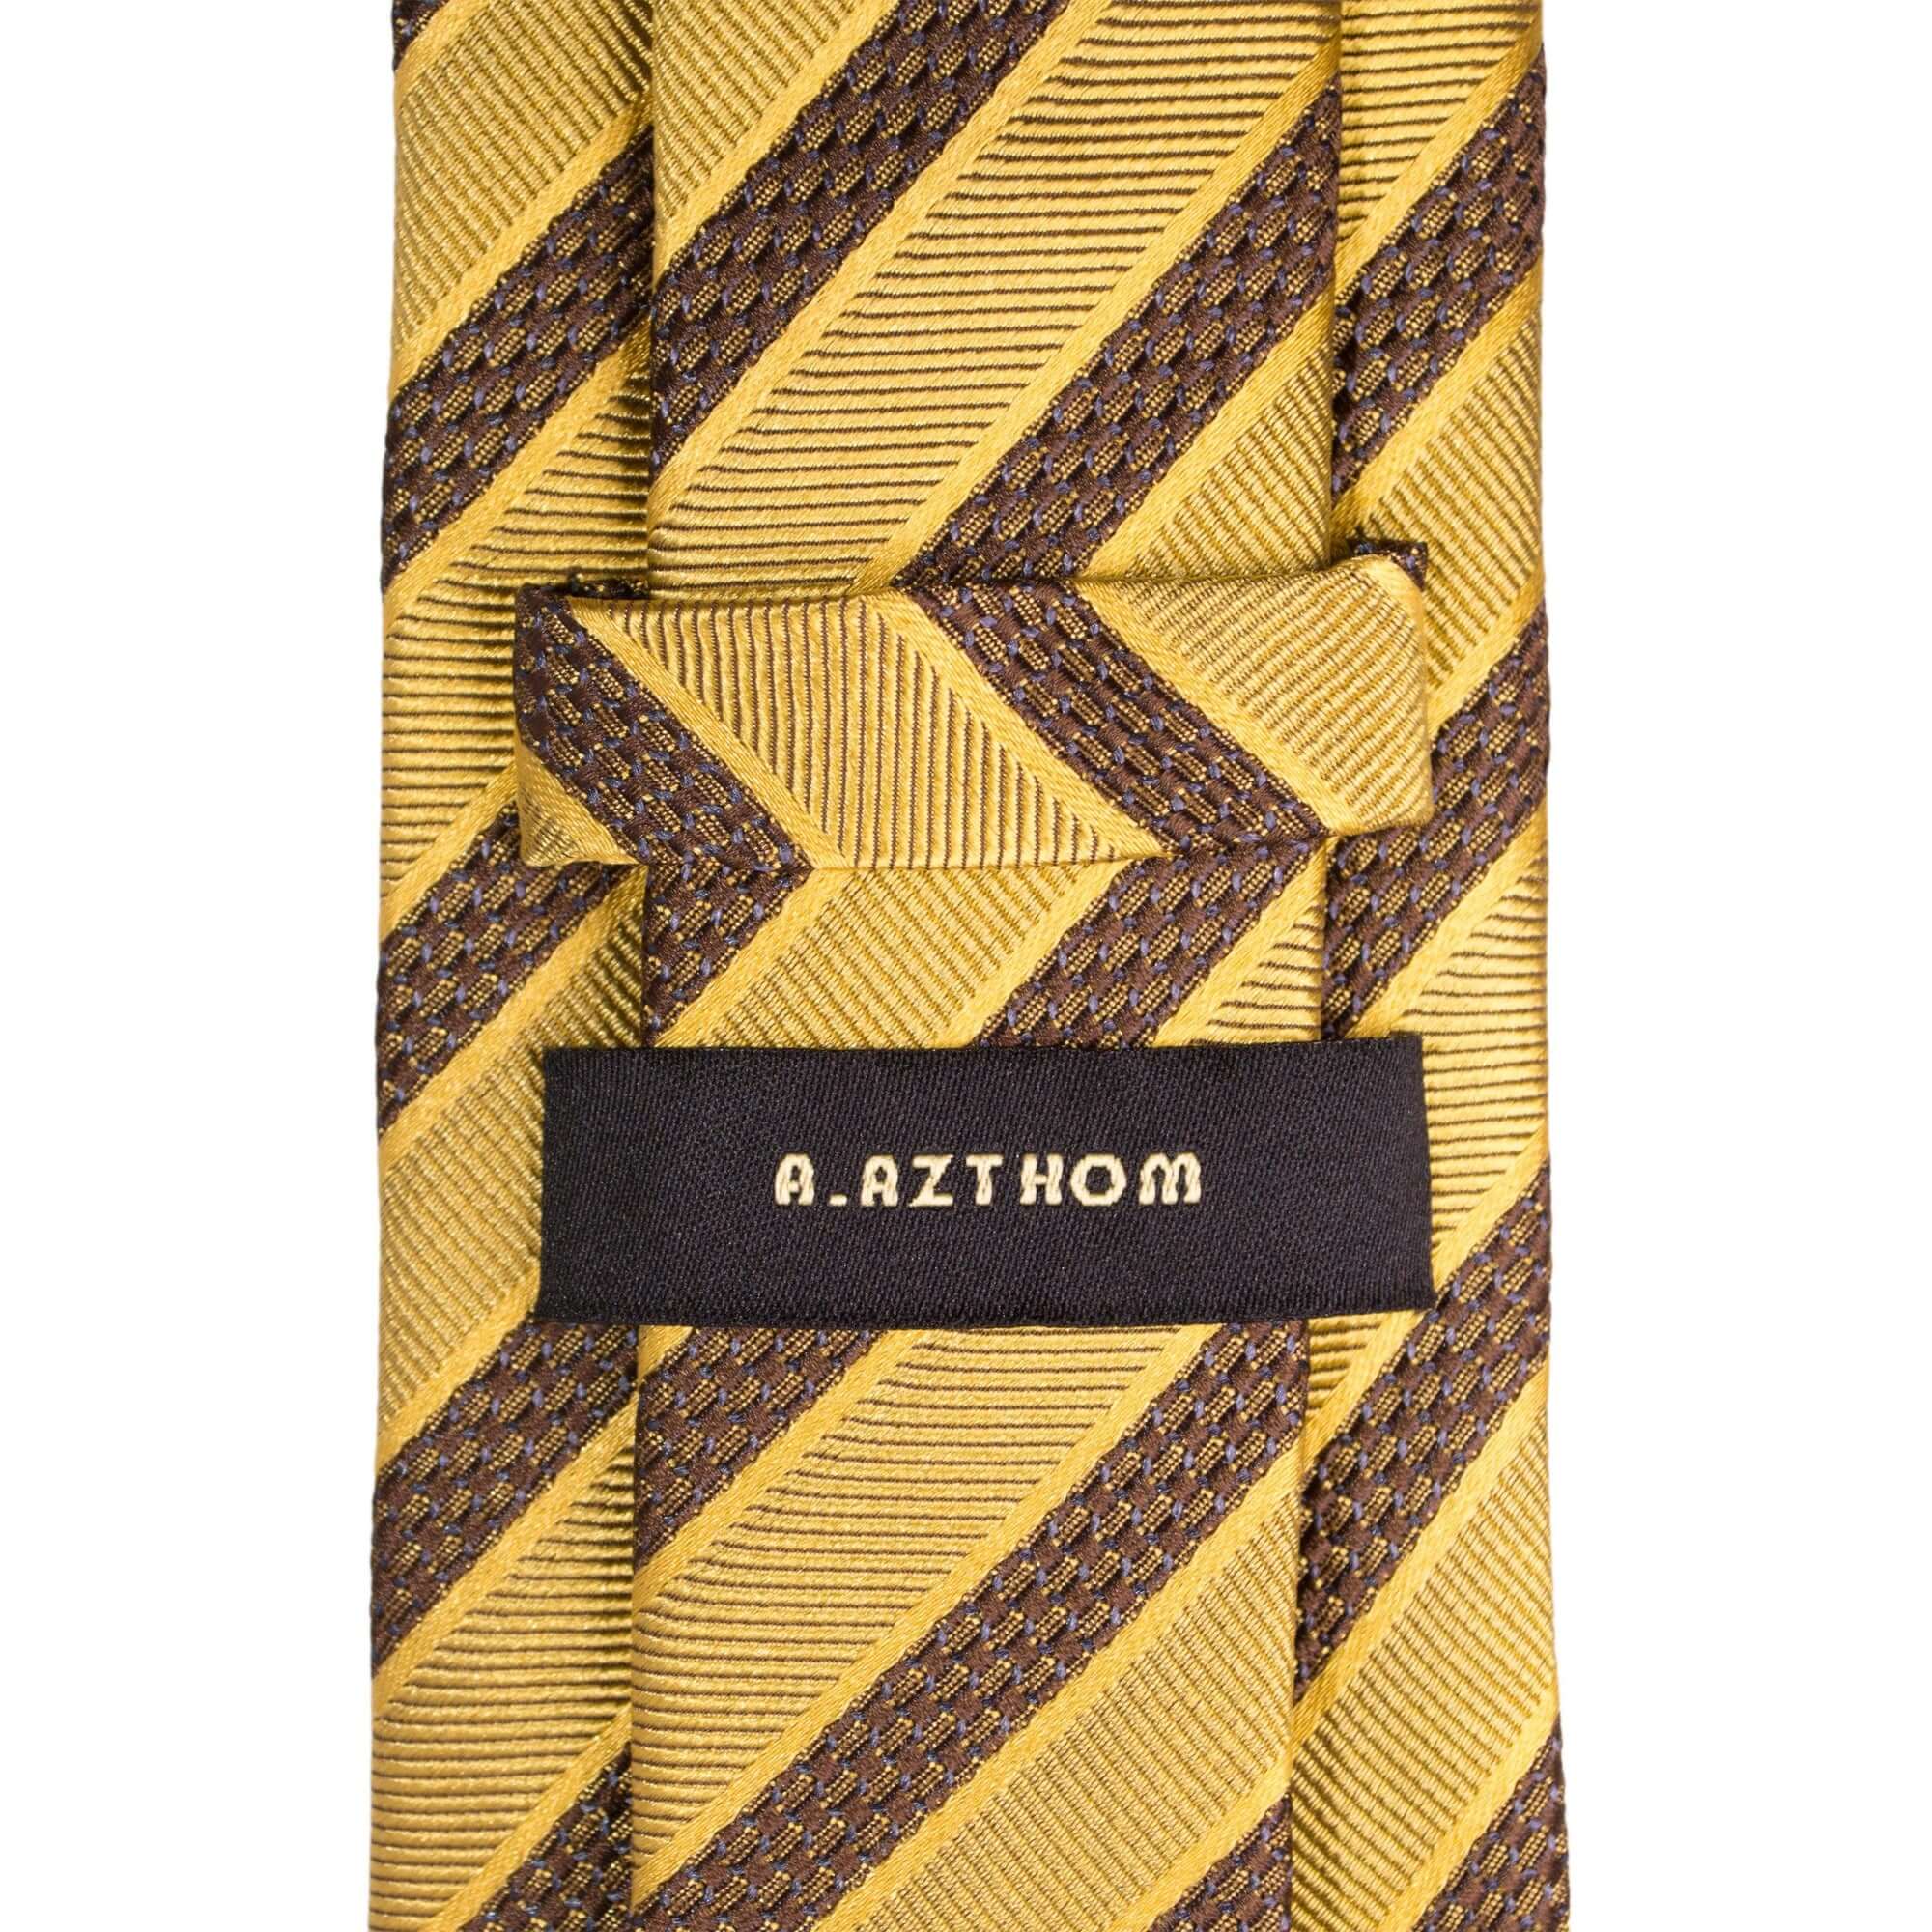 8cm Woven Brown Striped Necktie in Yellow M-Cufflinks.com.sg | Neckties.com.sg